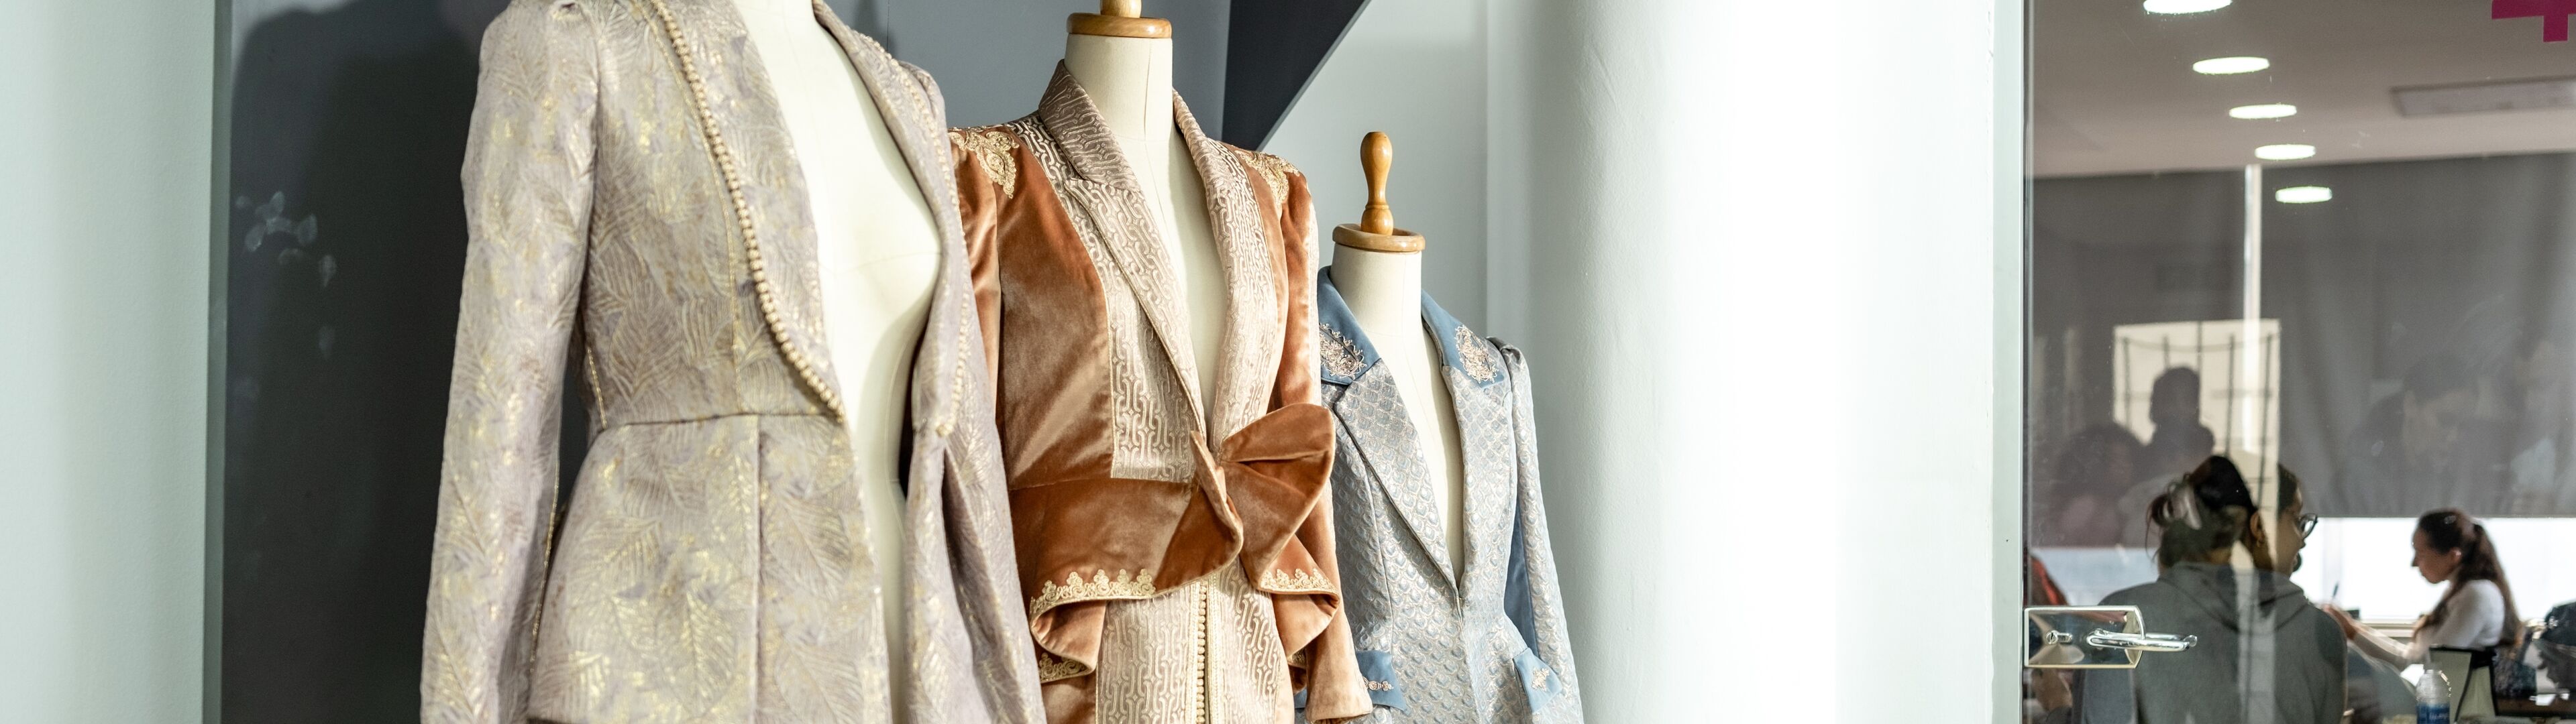 Des vestes de créateur sur mesure présentées sur des mannequins dans un atelier de création de mode, avec un travail en cours à l'arrière-plan.